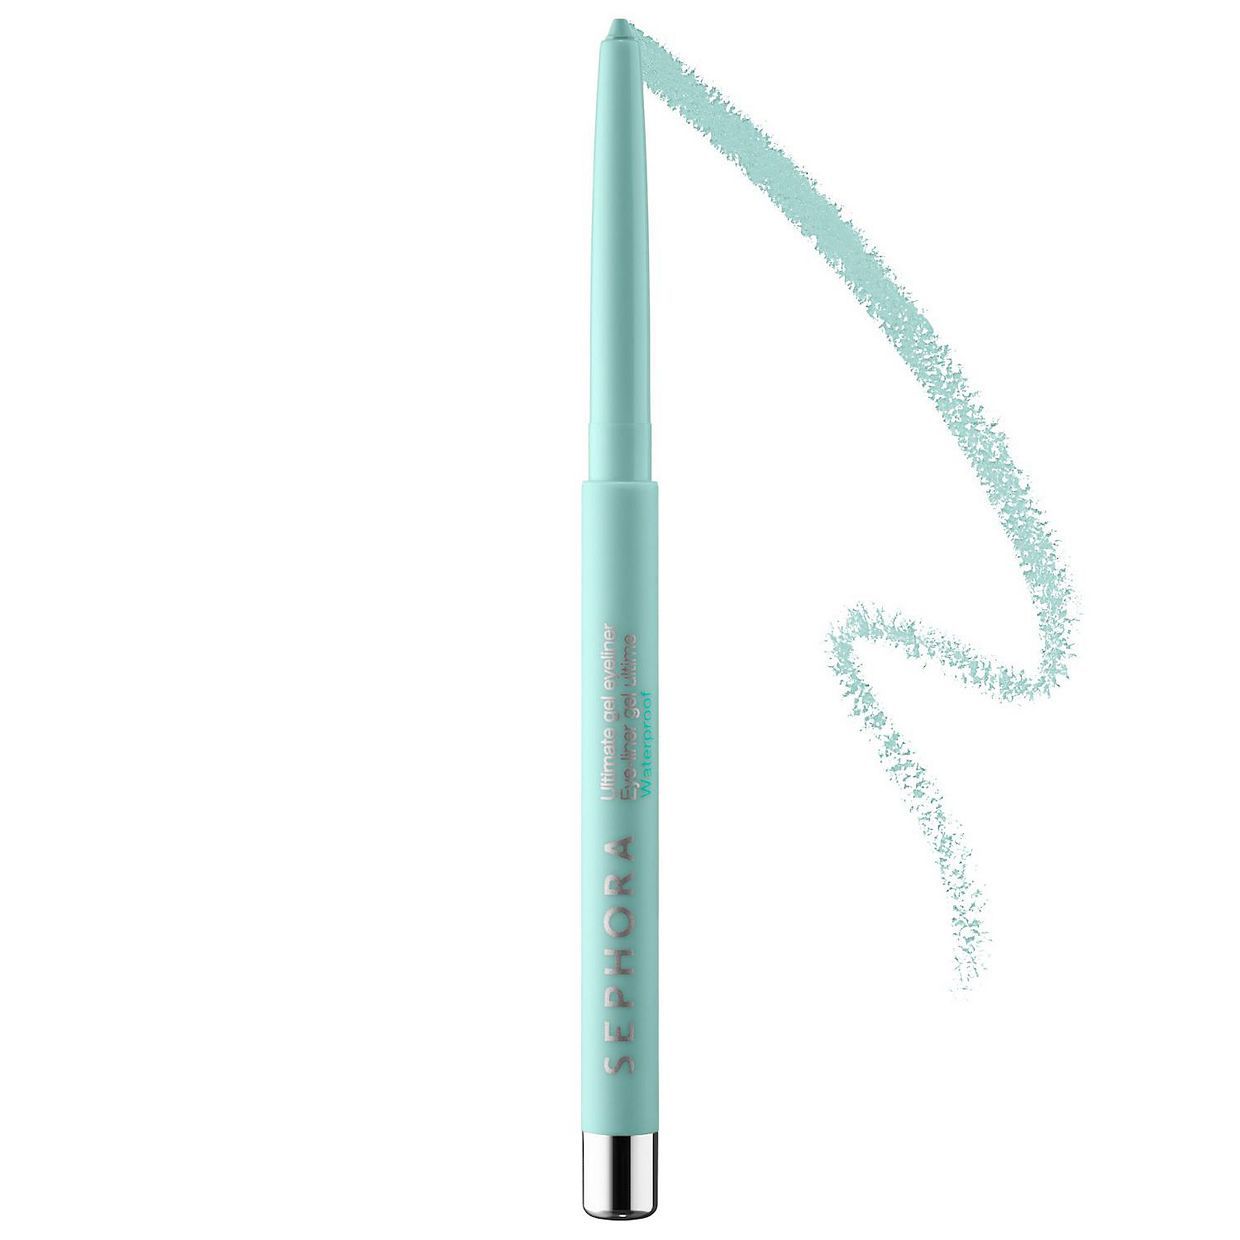 SEPHORA COLLECTION Ultimate Gel Waterproof Eyeliner Pencil | Kohl's